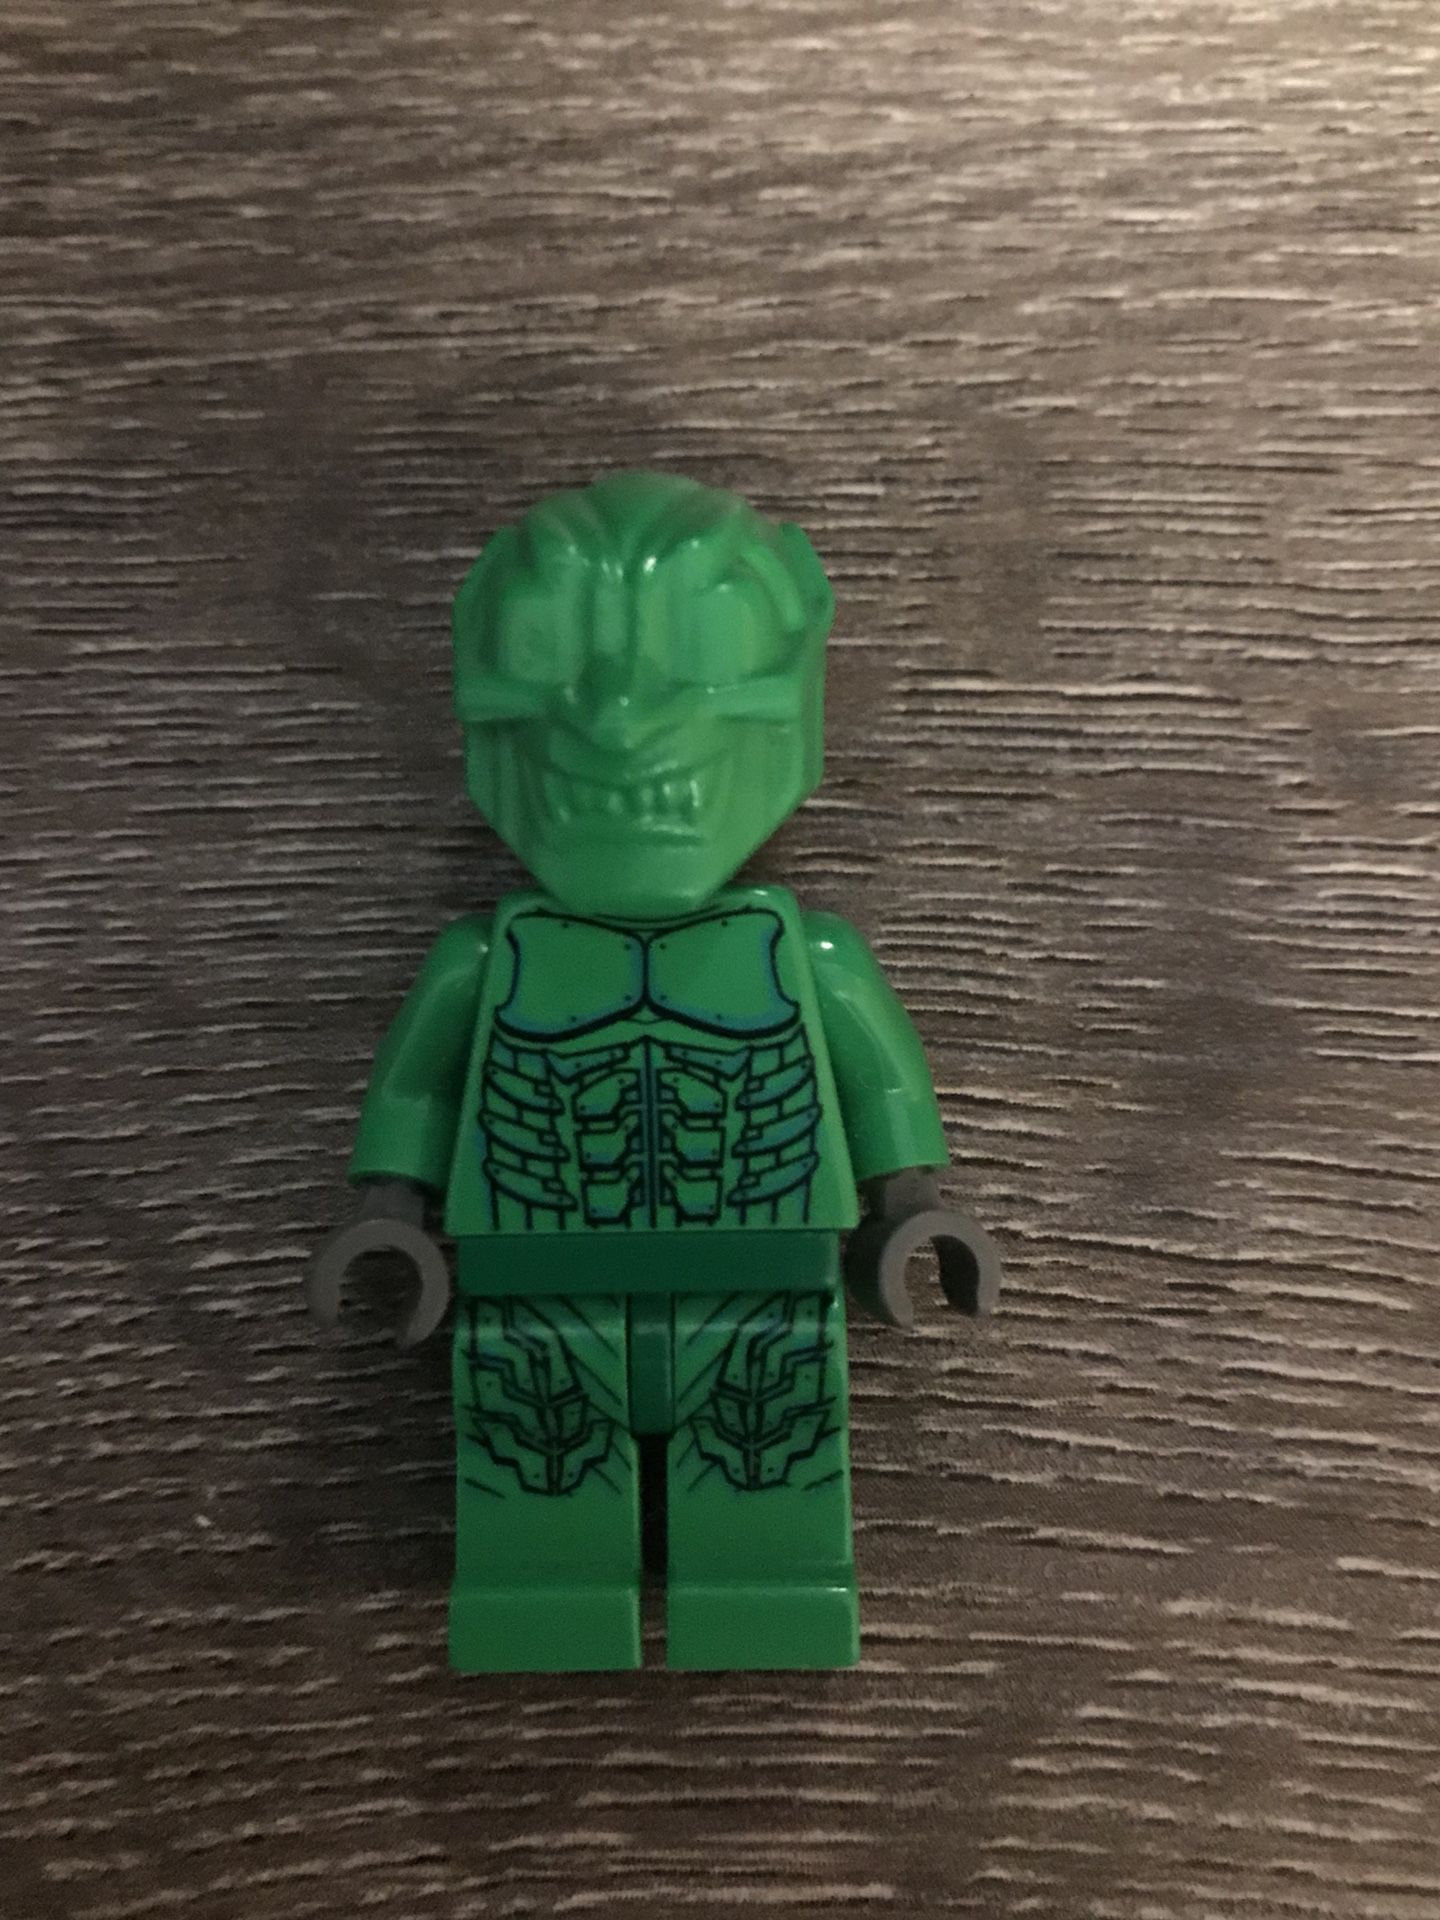 2001 Super Rare LEGO Figure Greengoblin (Spider Man’s enemy) Perfect condition